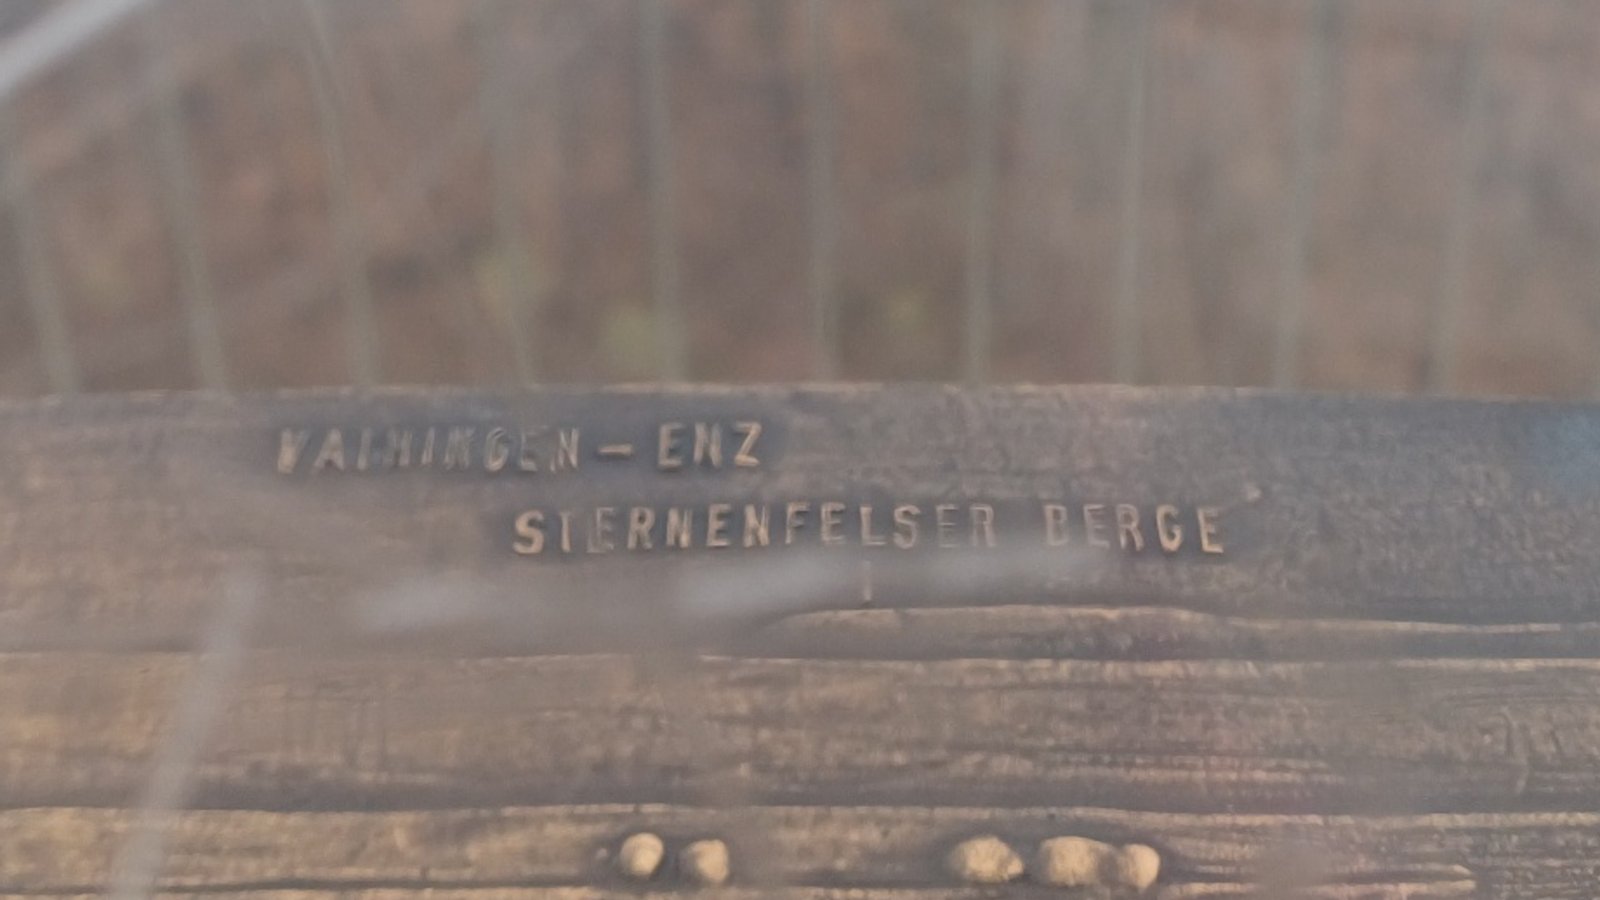 Auf der Aussichtsplattform des Stuttgarter Fernsehturms erfährt man, dass Vaihingen-Enz hinter den Sternenfelser Bergen liegt ... das ist eine neue Erkenntnis.  Foto: Rücker